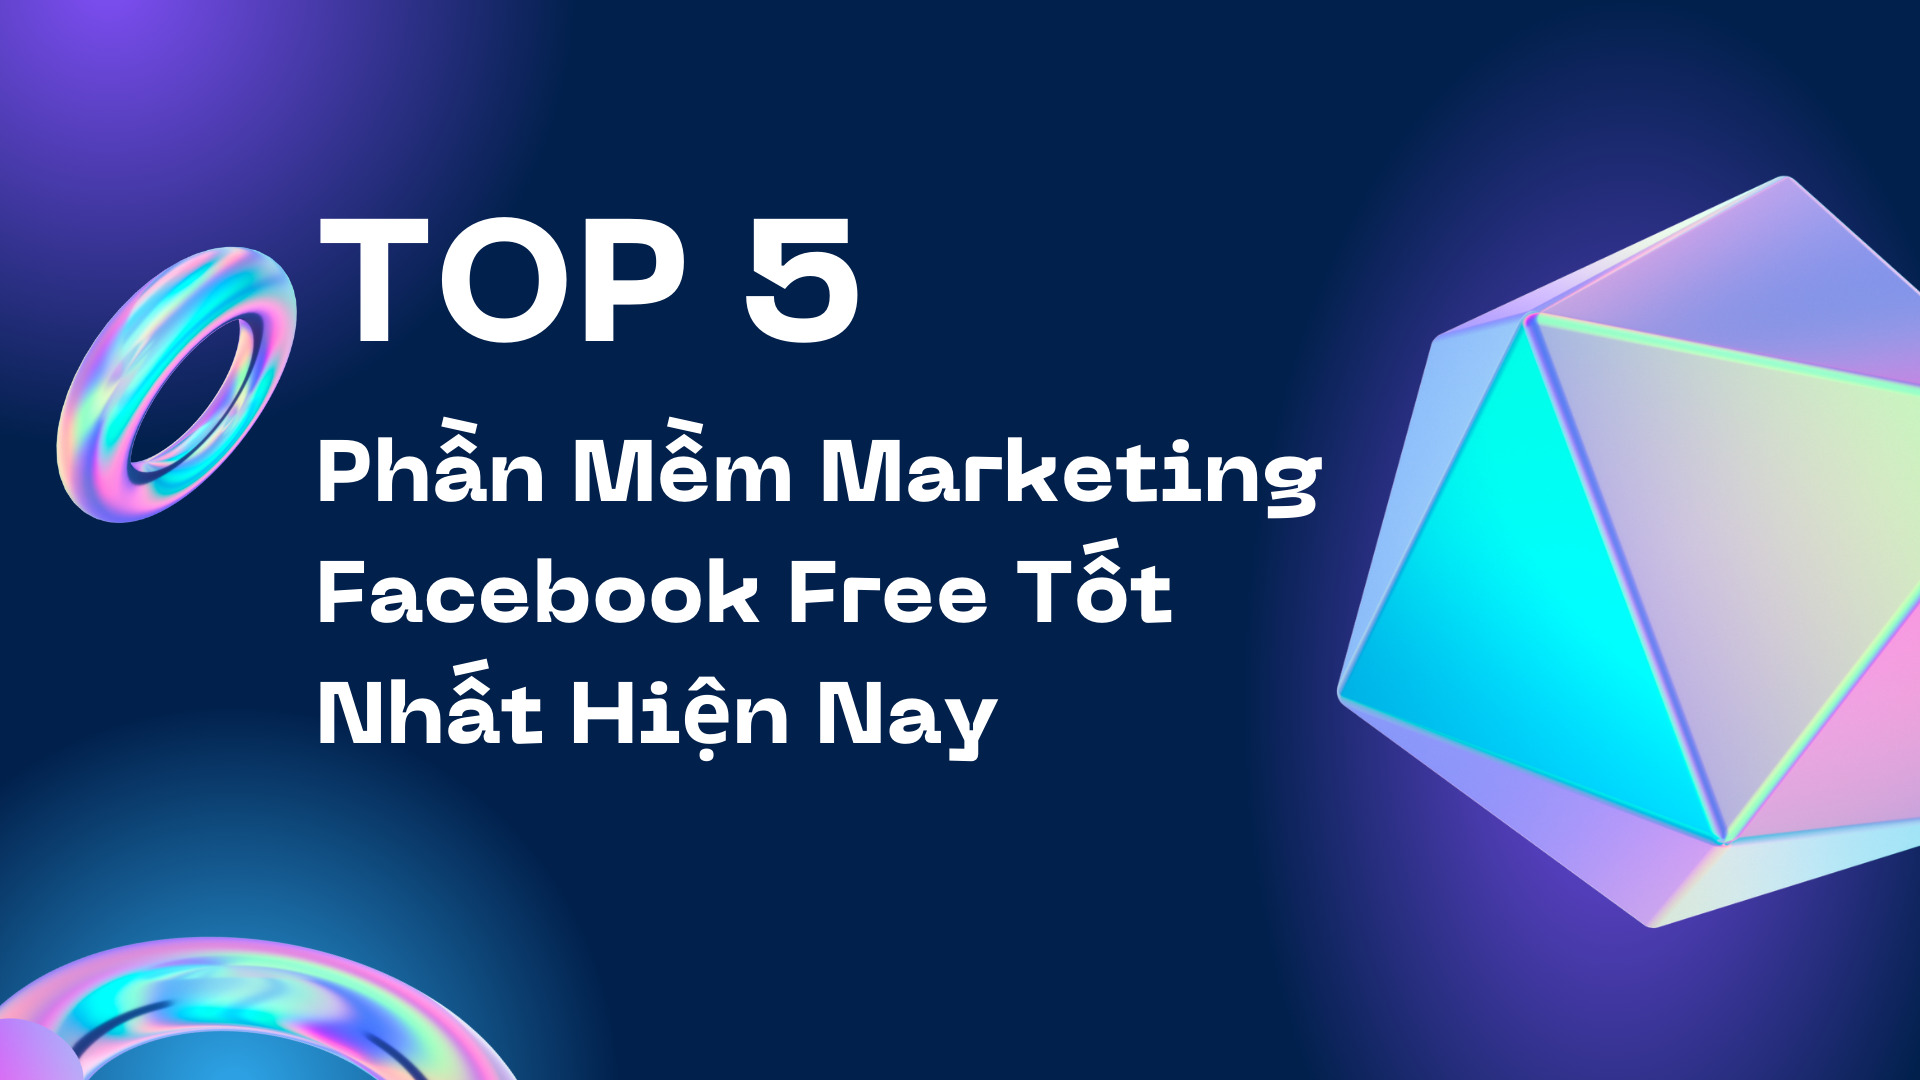 Top 5 Phần Mềm Marketing Facebook Free Tốt Nhất Hiện Nay